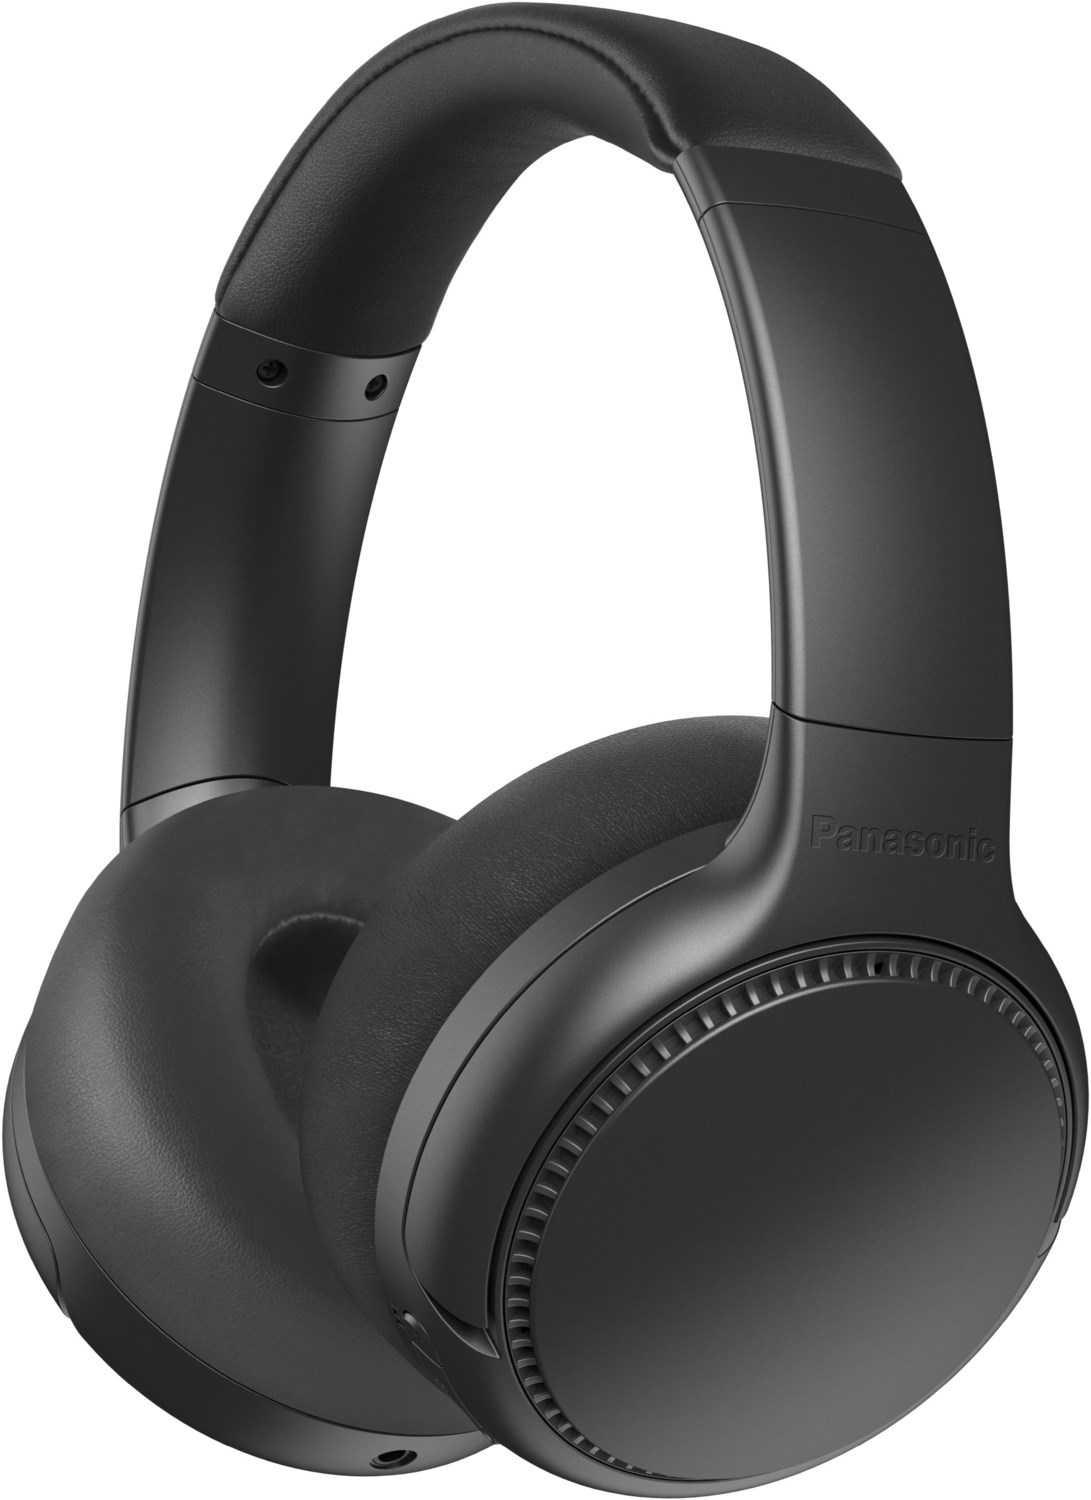 RB-M700BE Bluetooth-Kopfhörer schwarz von Panasonic